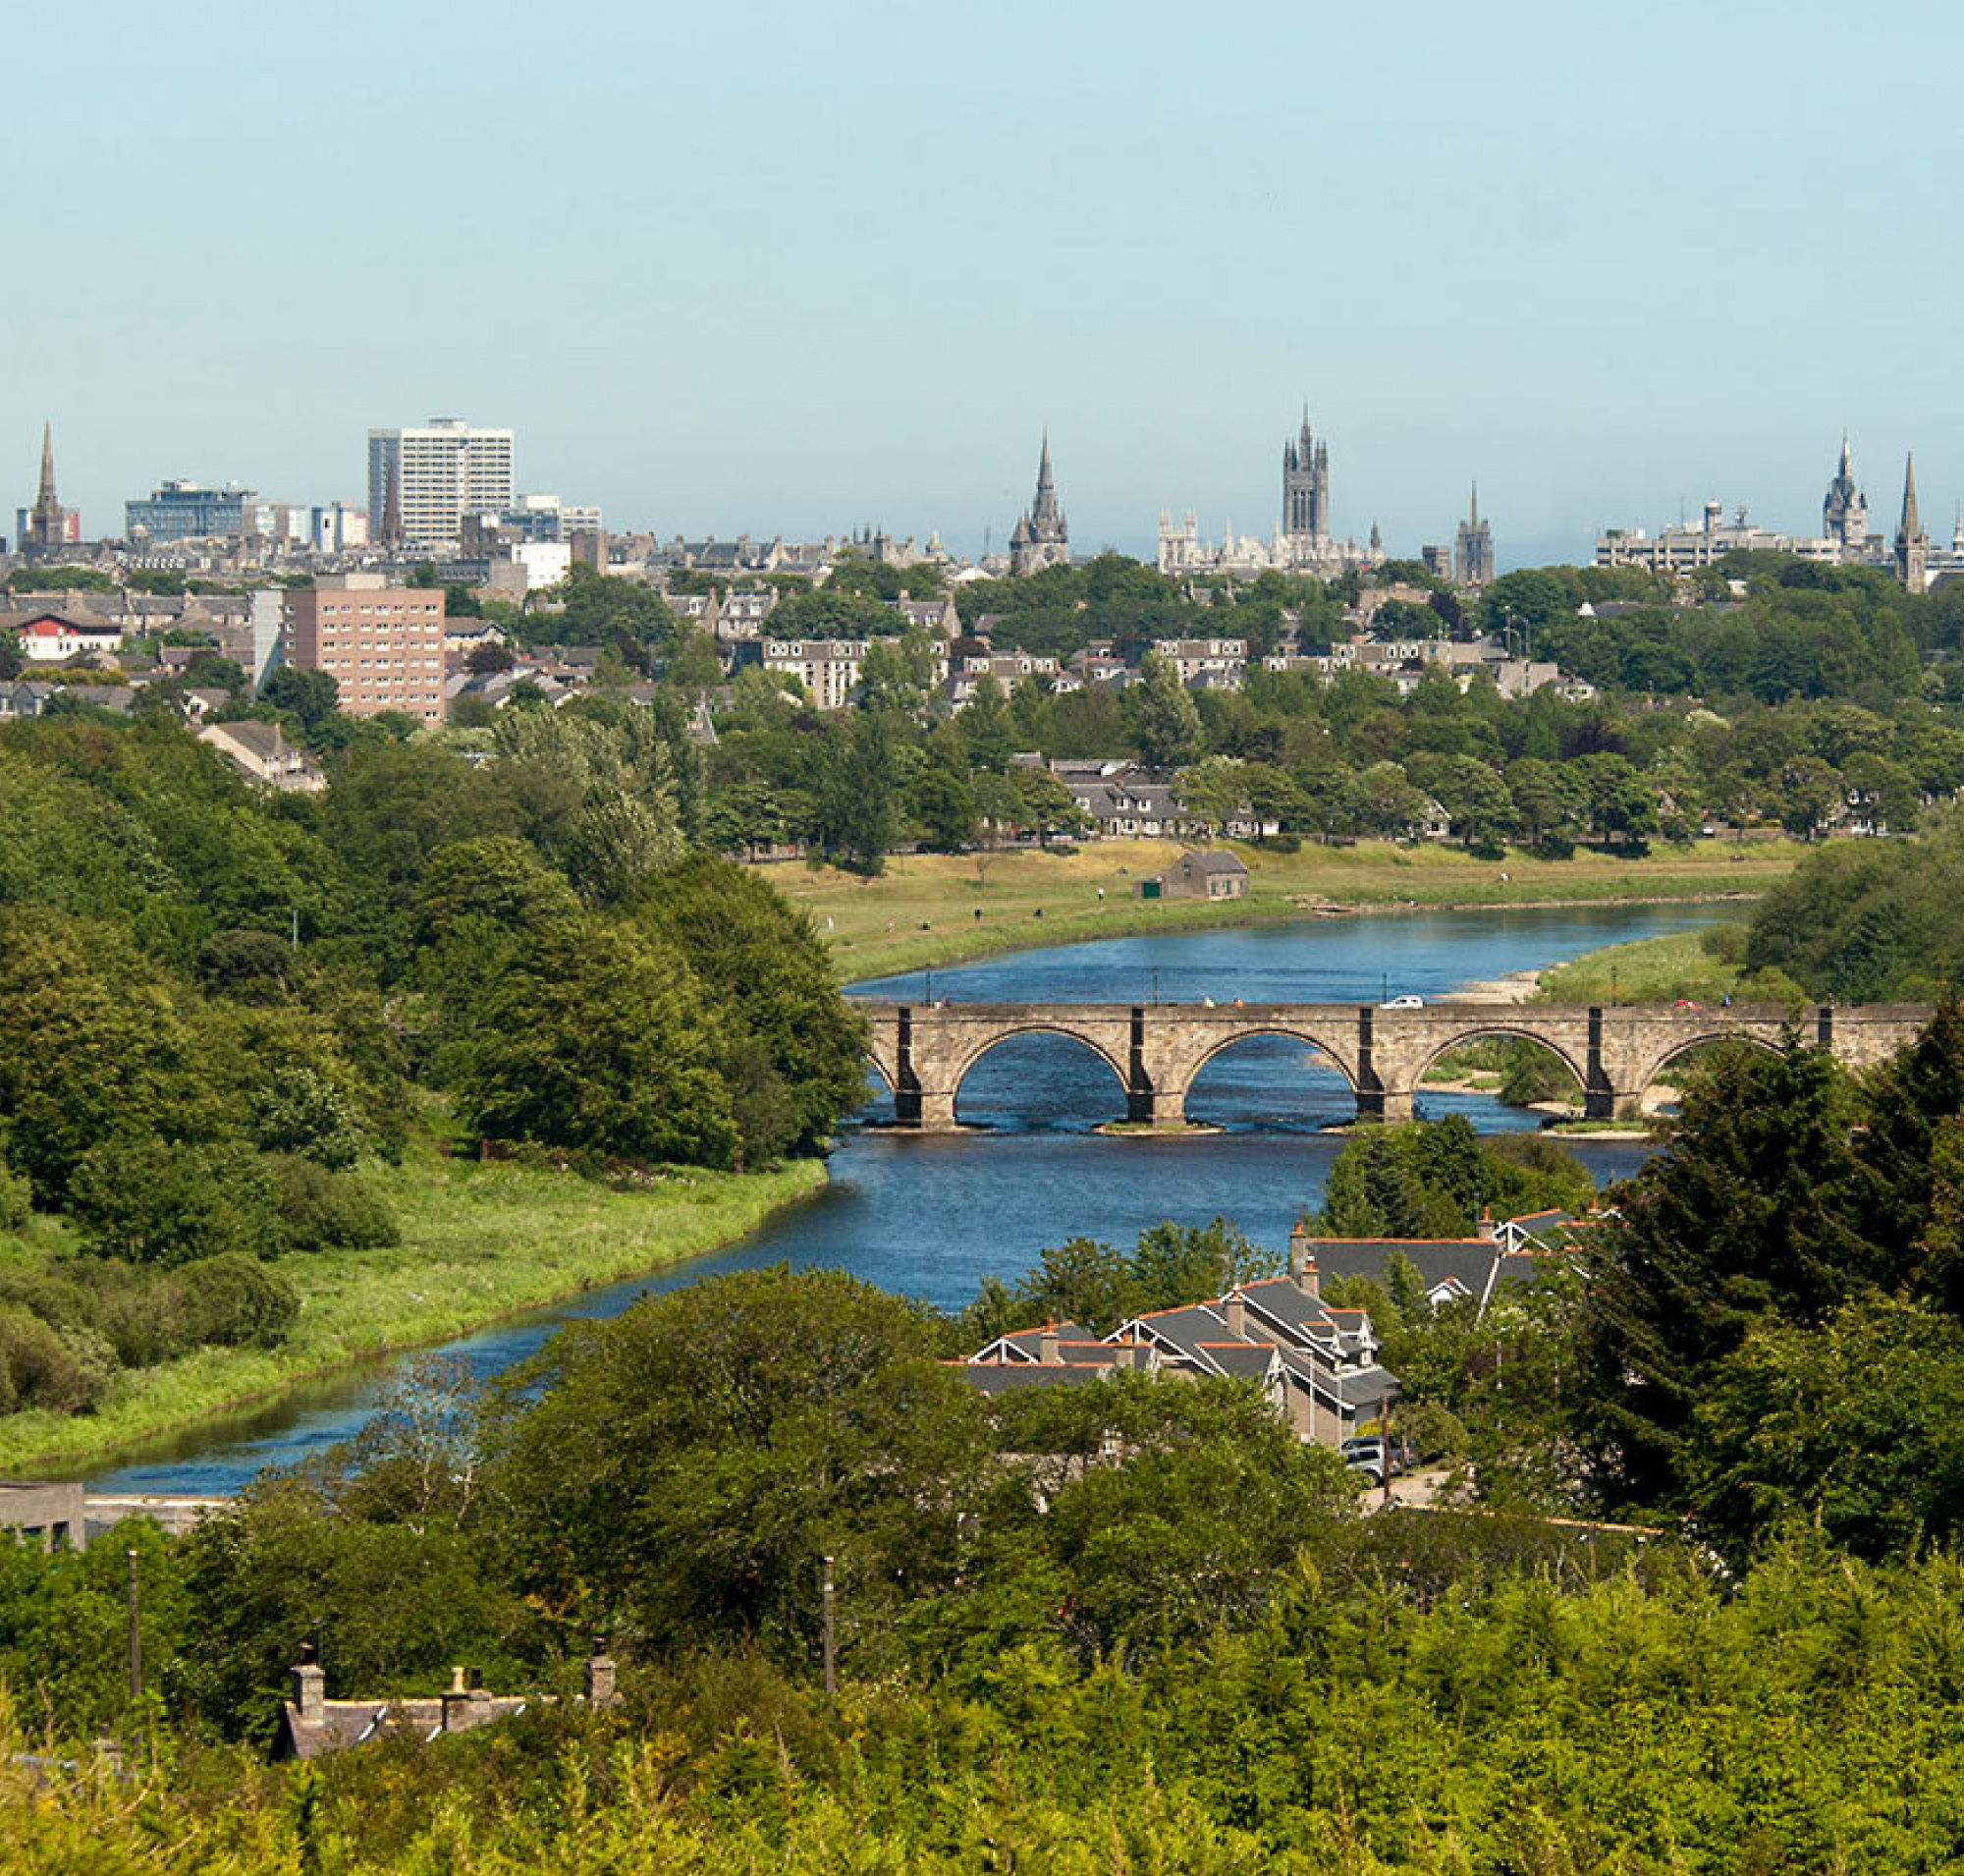 Pogled iz zraka na grad s kamenim mostom preko rijeke okružene zelenilom i mješavinom modernih 